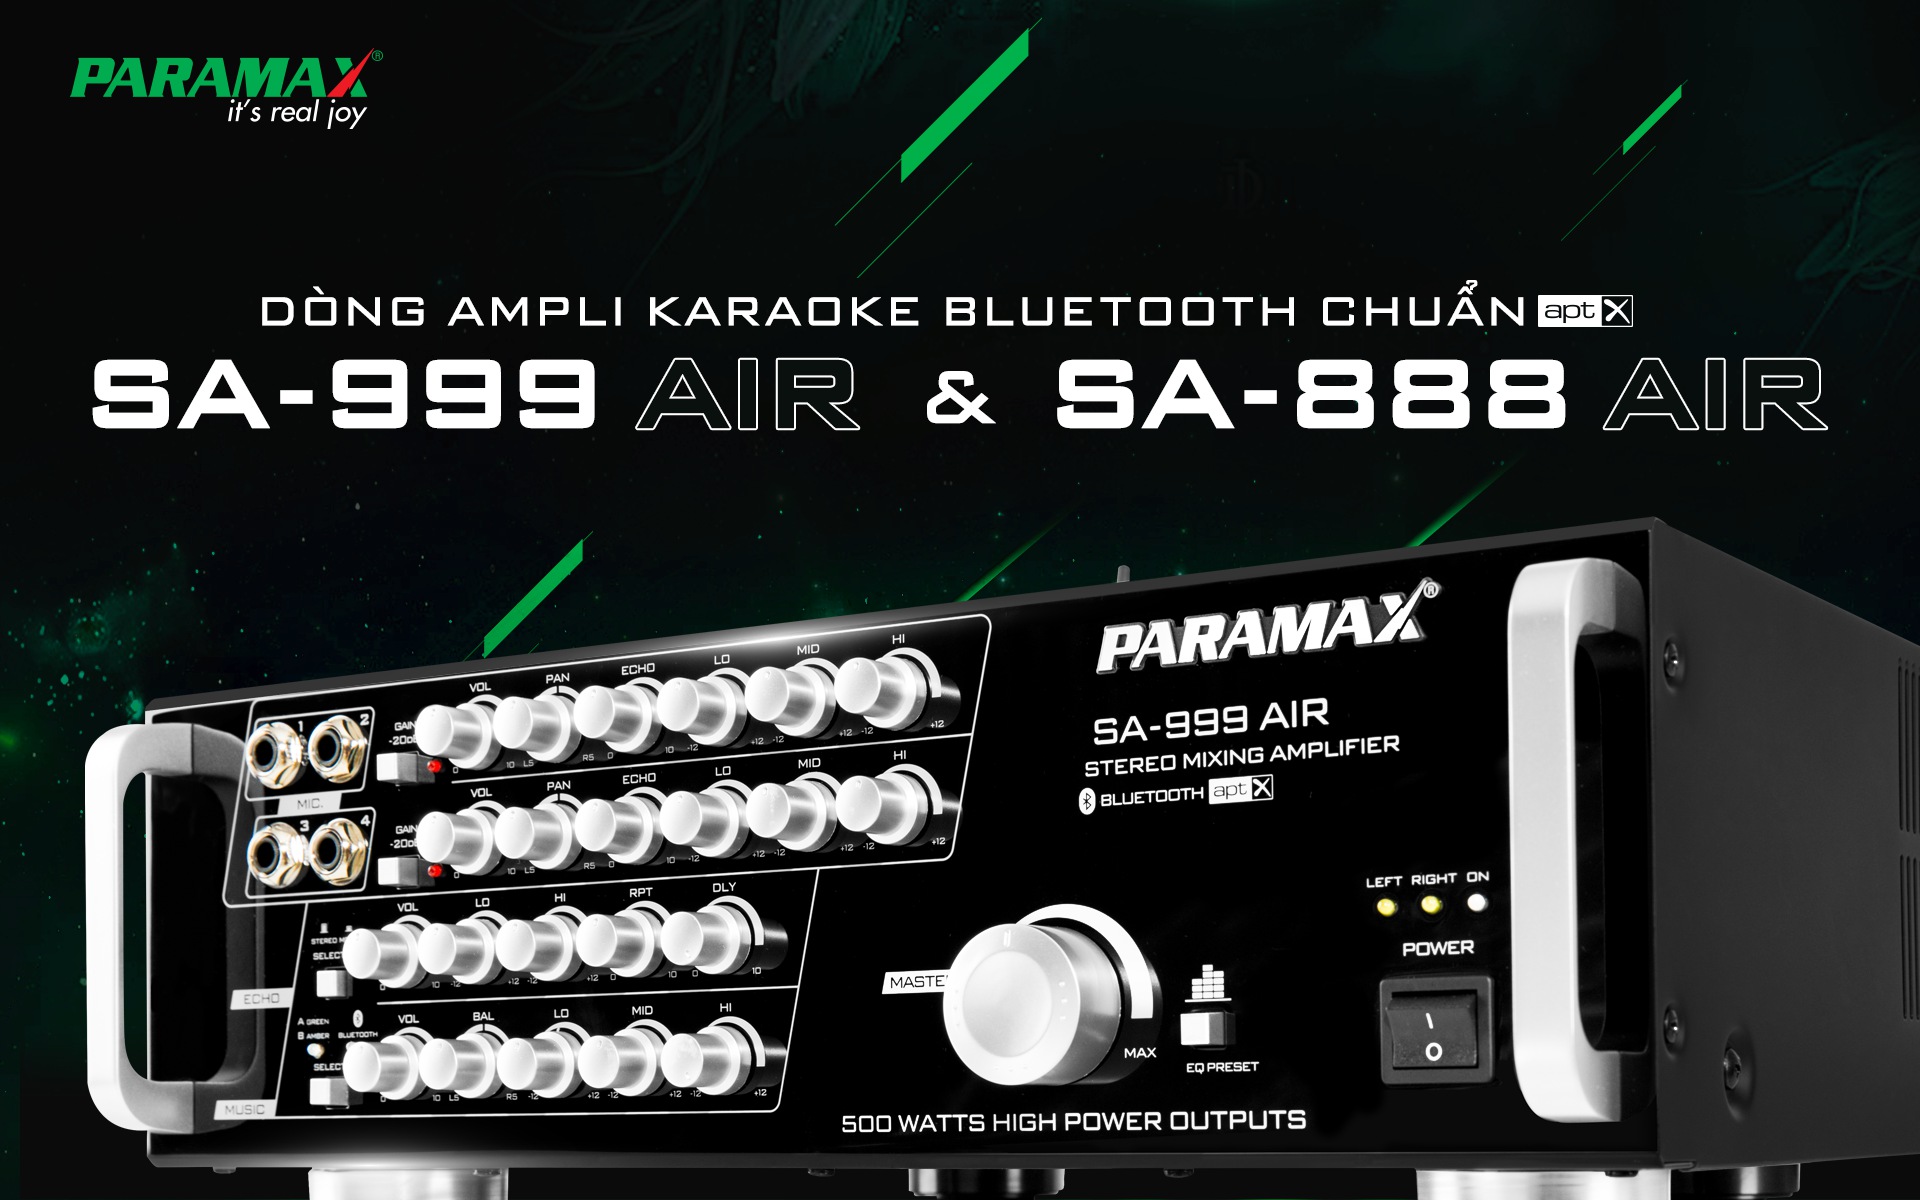 Amply Karaoke Paramax SA888 Air New 2018 